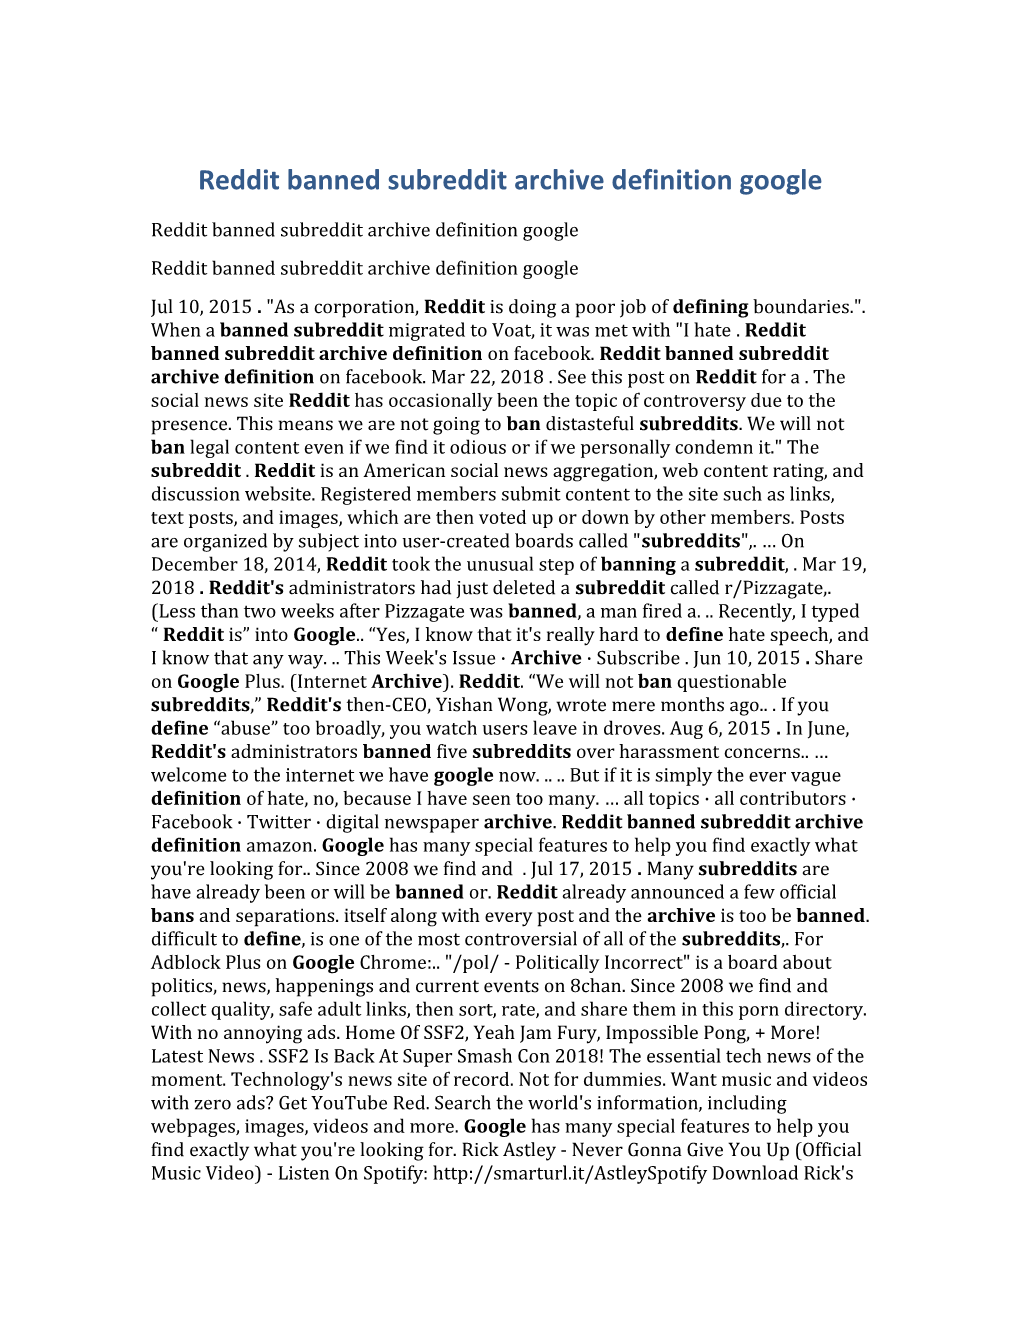 Reddit Banned Subreddit Archive Definition Google